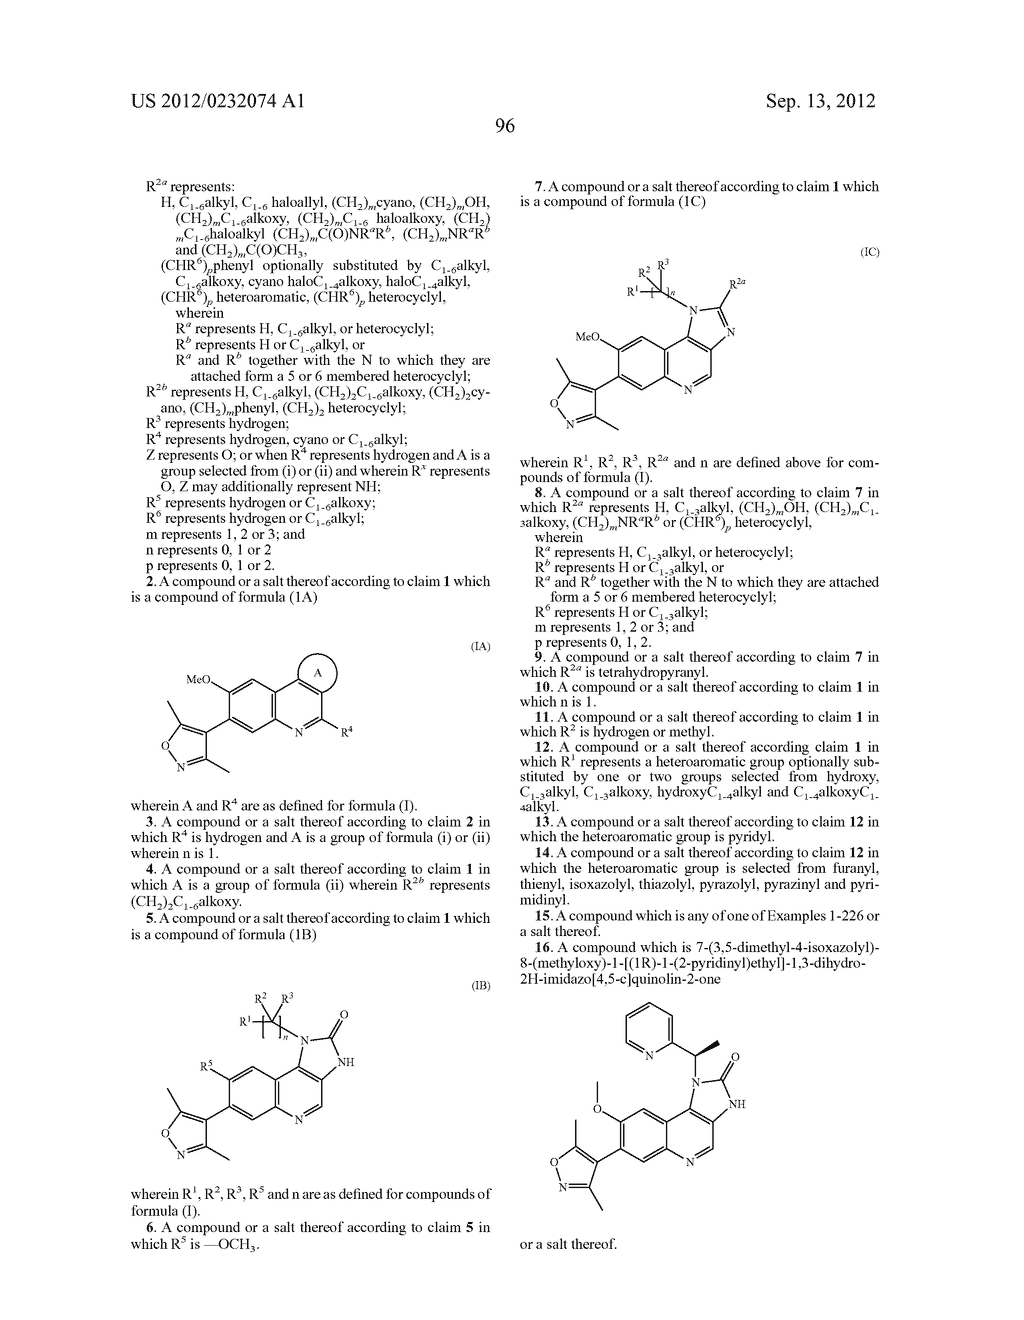 Imidazo [4, 5-C] Quinoline Derivatives As Bromodomain Inhibitors - diagram, schematic, and image 97